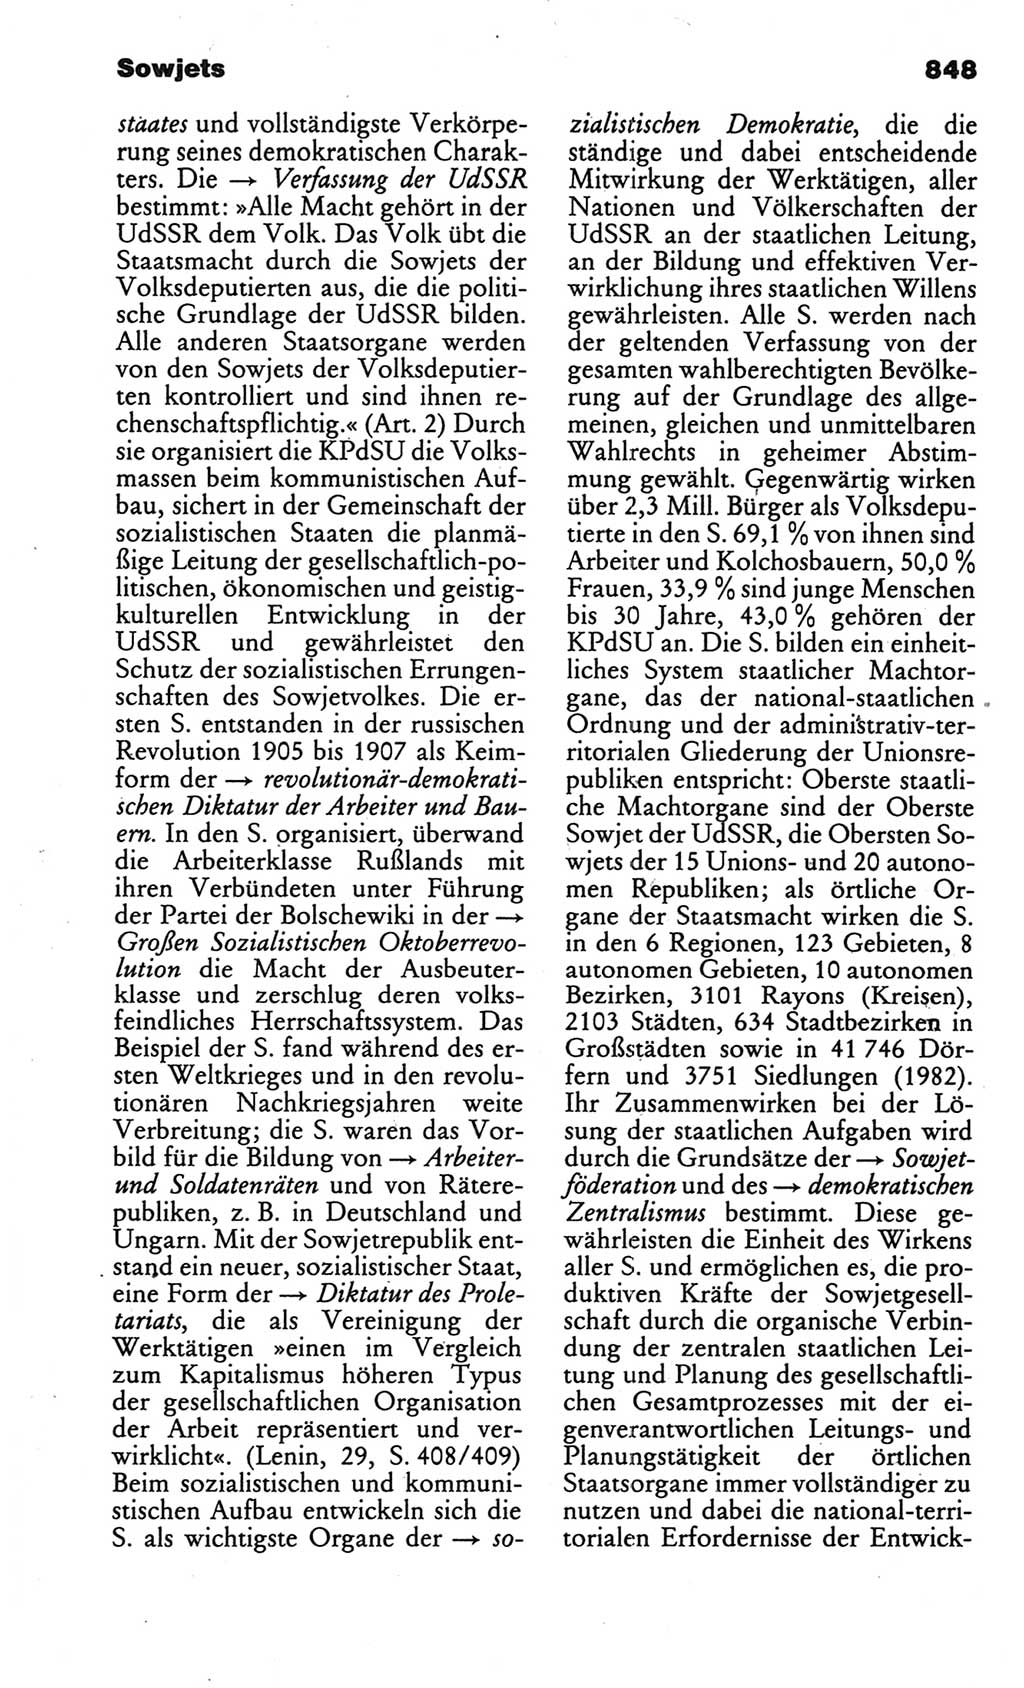 Kleines politisches Wörterbuch [Deutsche Demokratische Republik (DDR)] 1986, Seite 848 (Kl. pol. Wb. DDR 1986, S. 848)